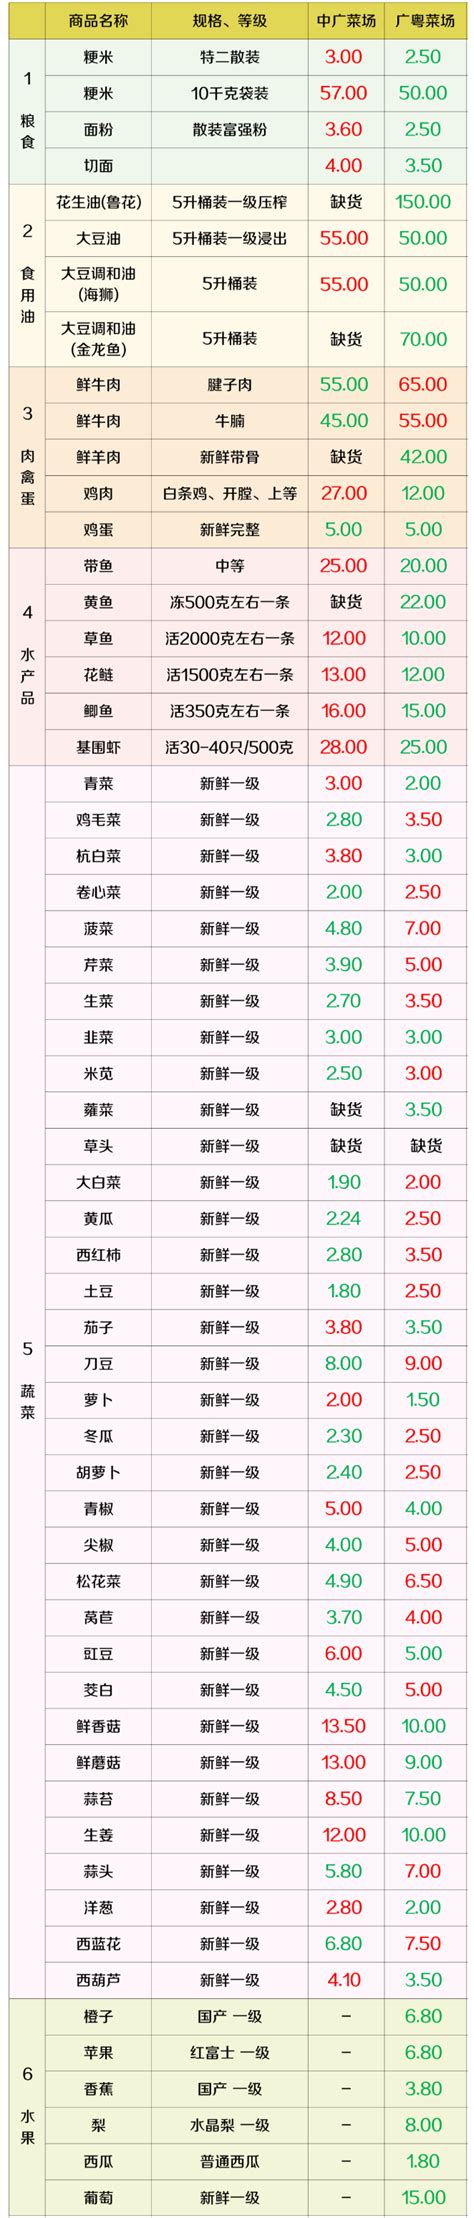 上海虹口区最新物价信息(6月17日发布) - 上海慢慢看